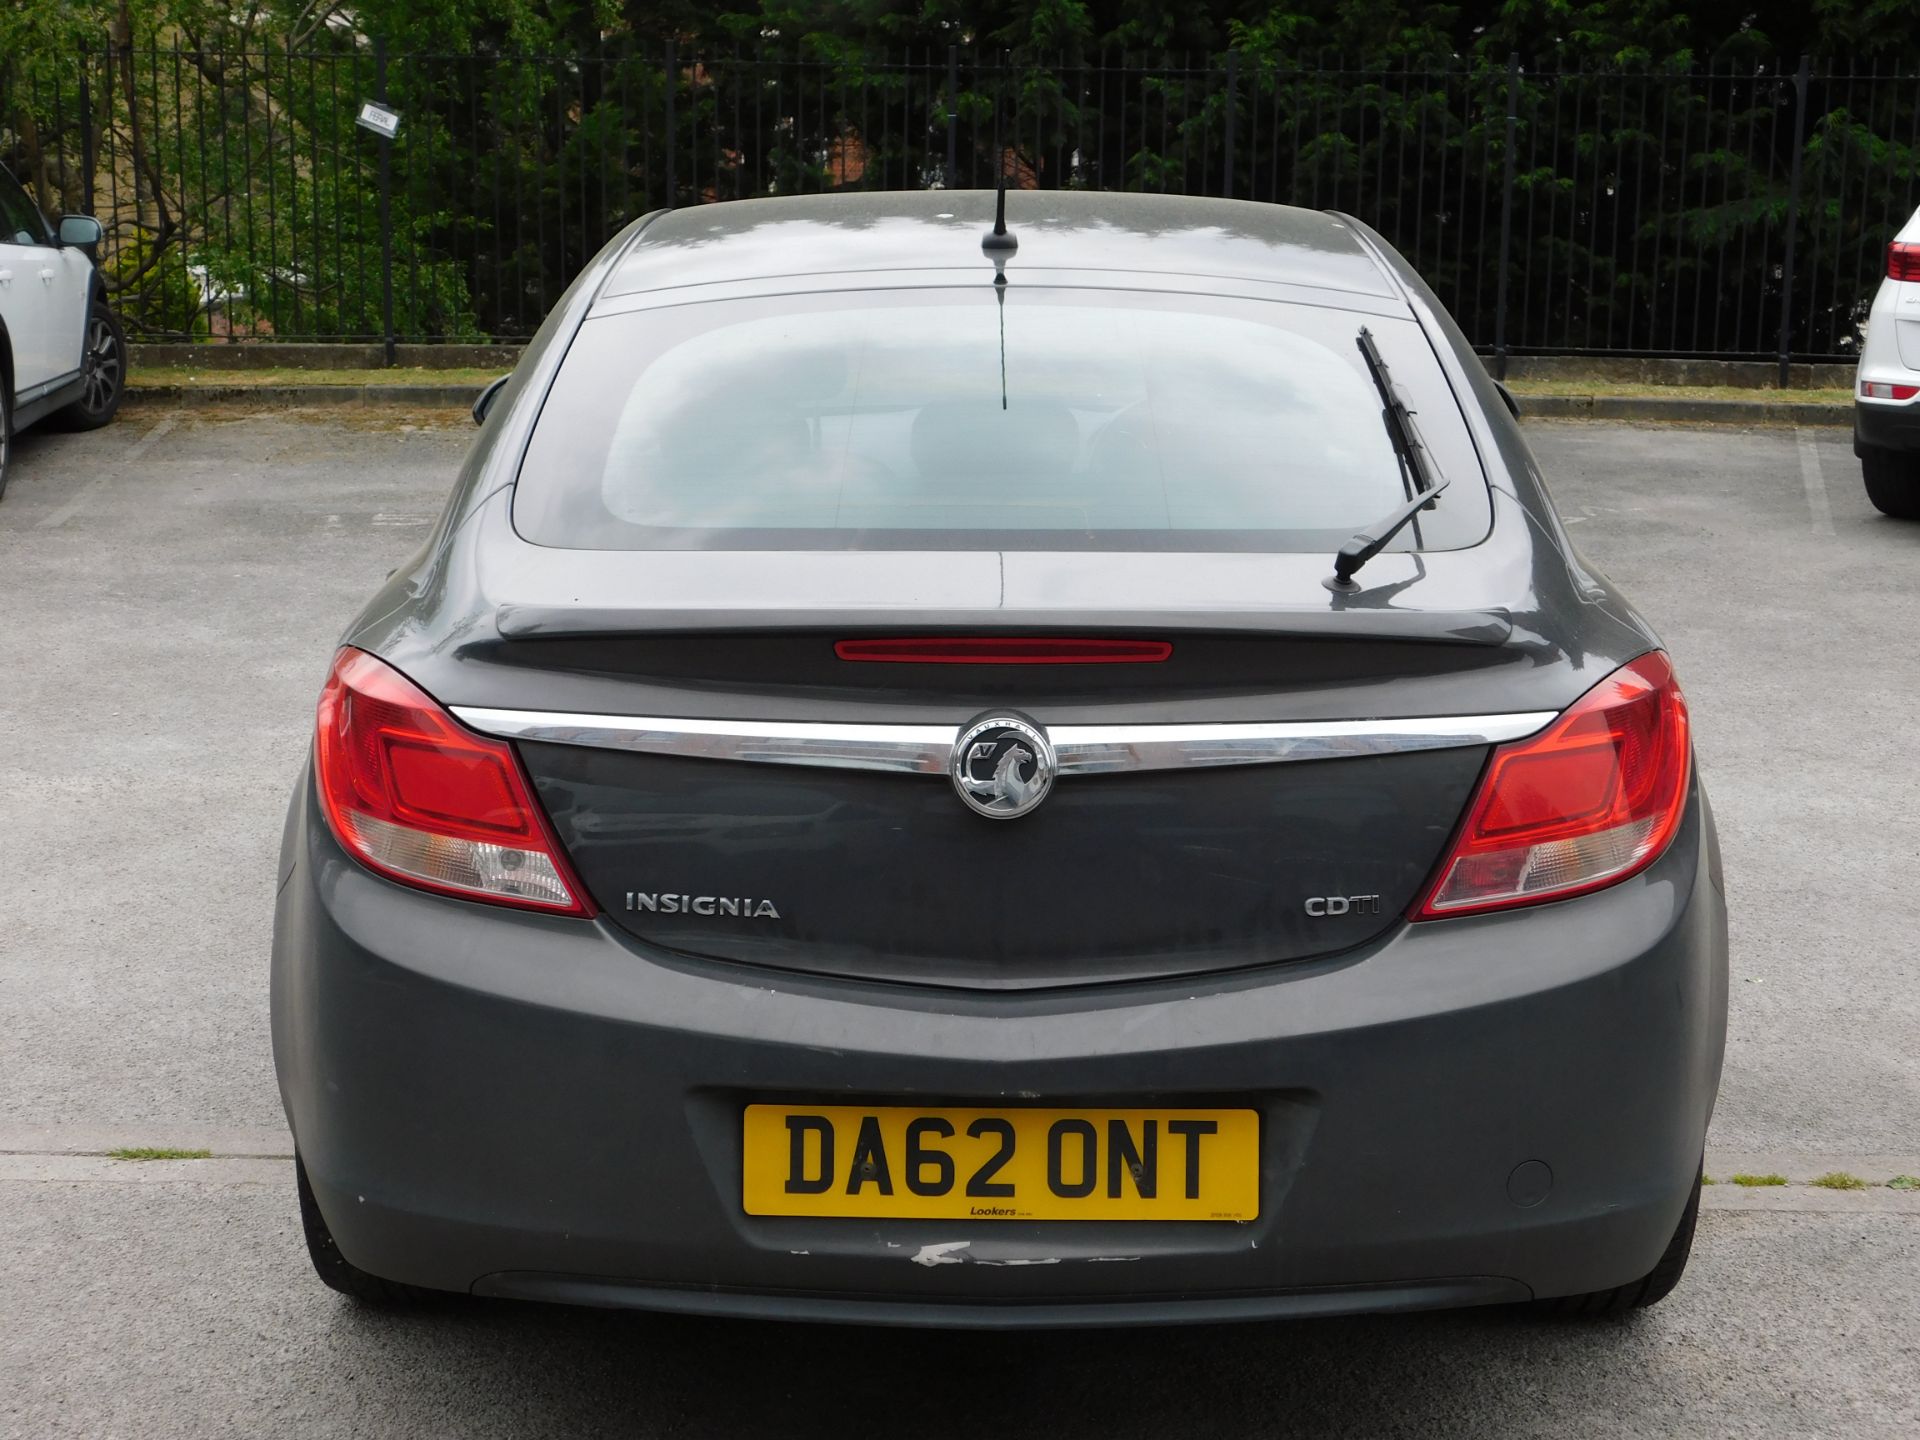 Vauxhall Insignia SRI 2.0CDTI five door hatchback, - Image 4 of 16